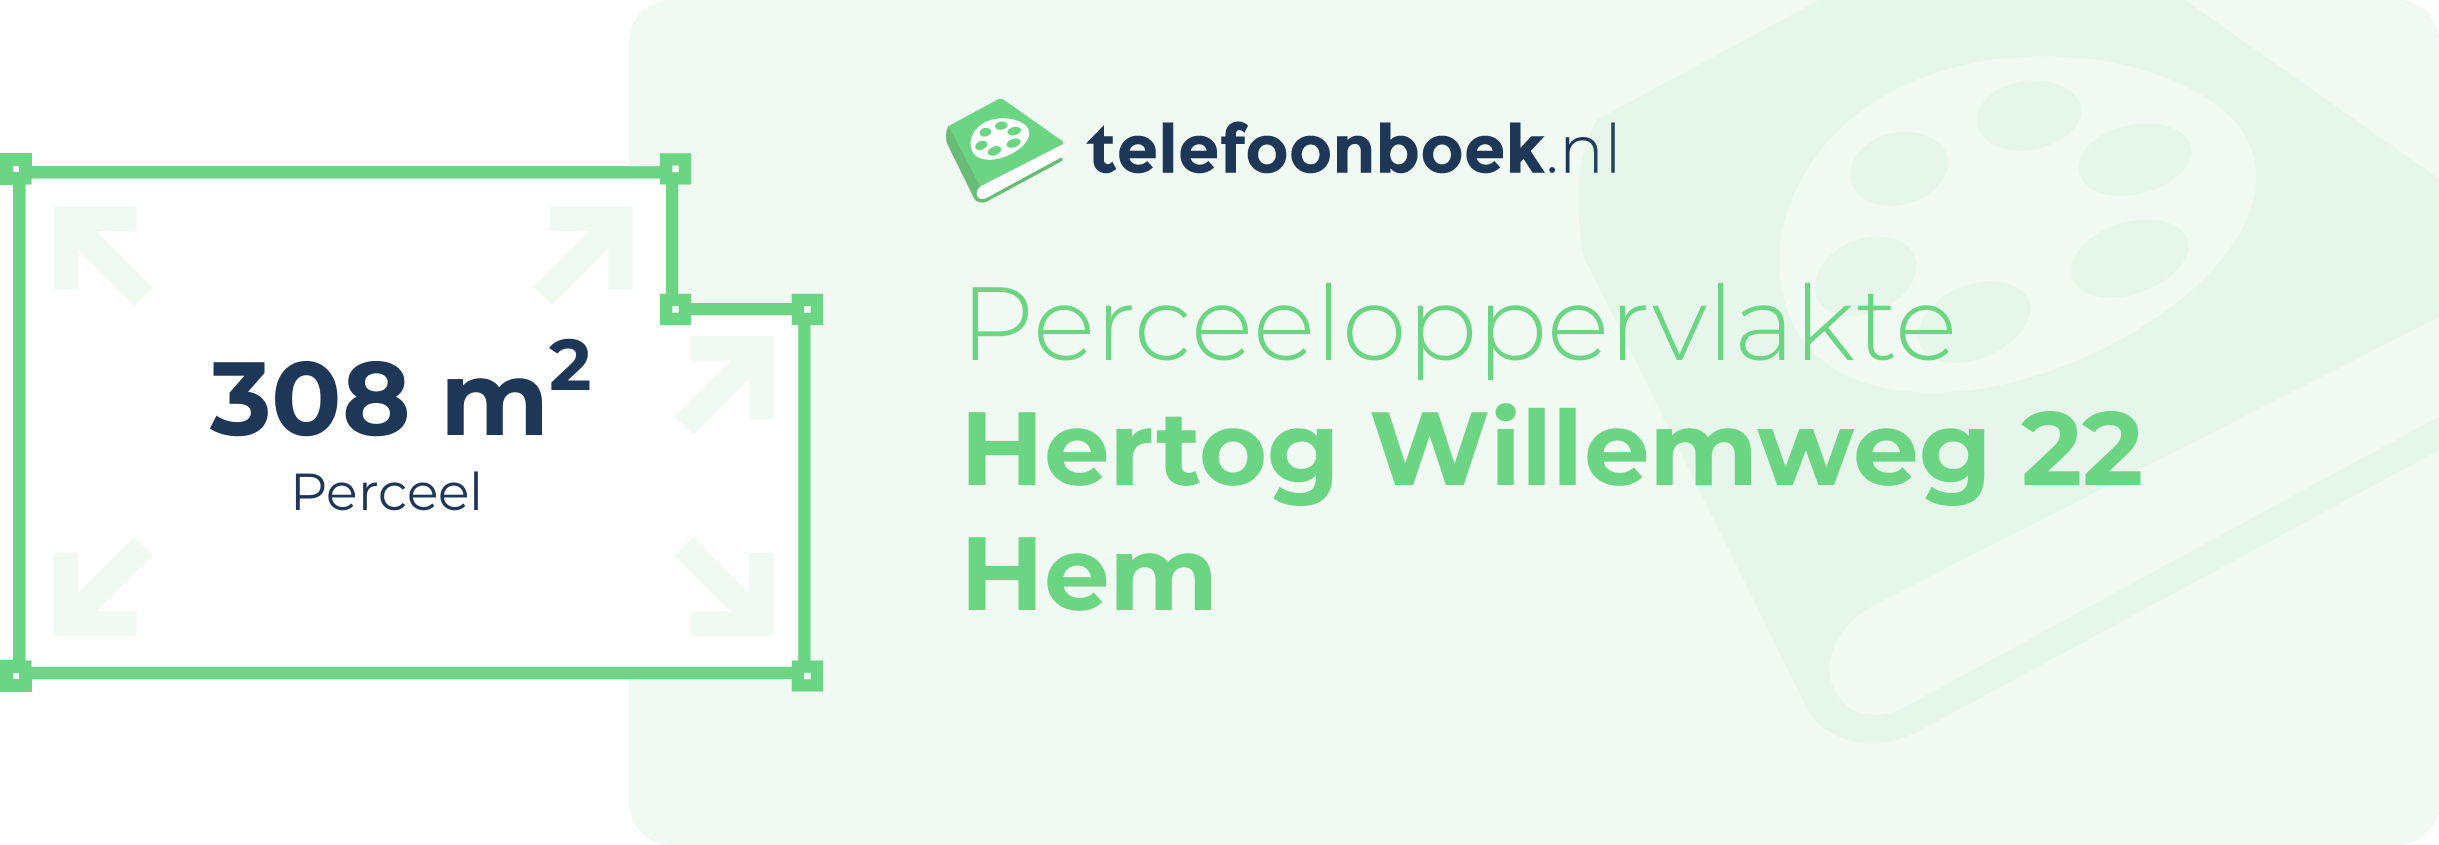 Perceeloppervlakte Hertog Willemweg 22 Hem